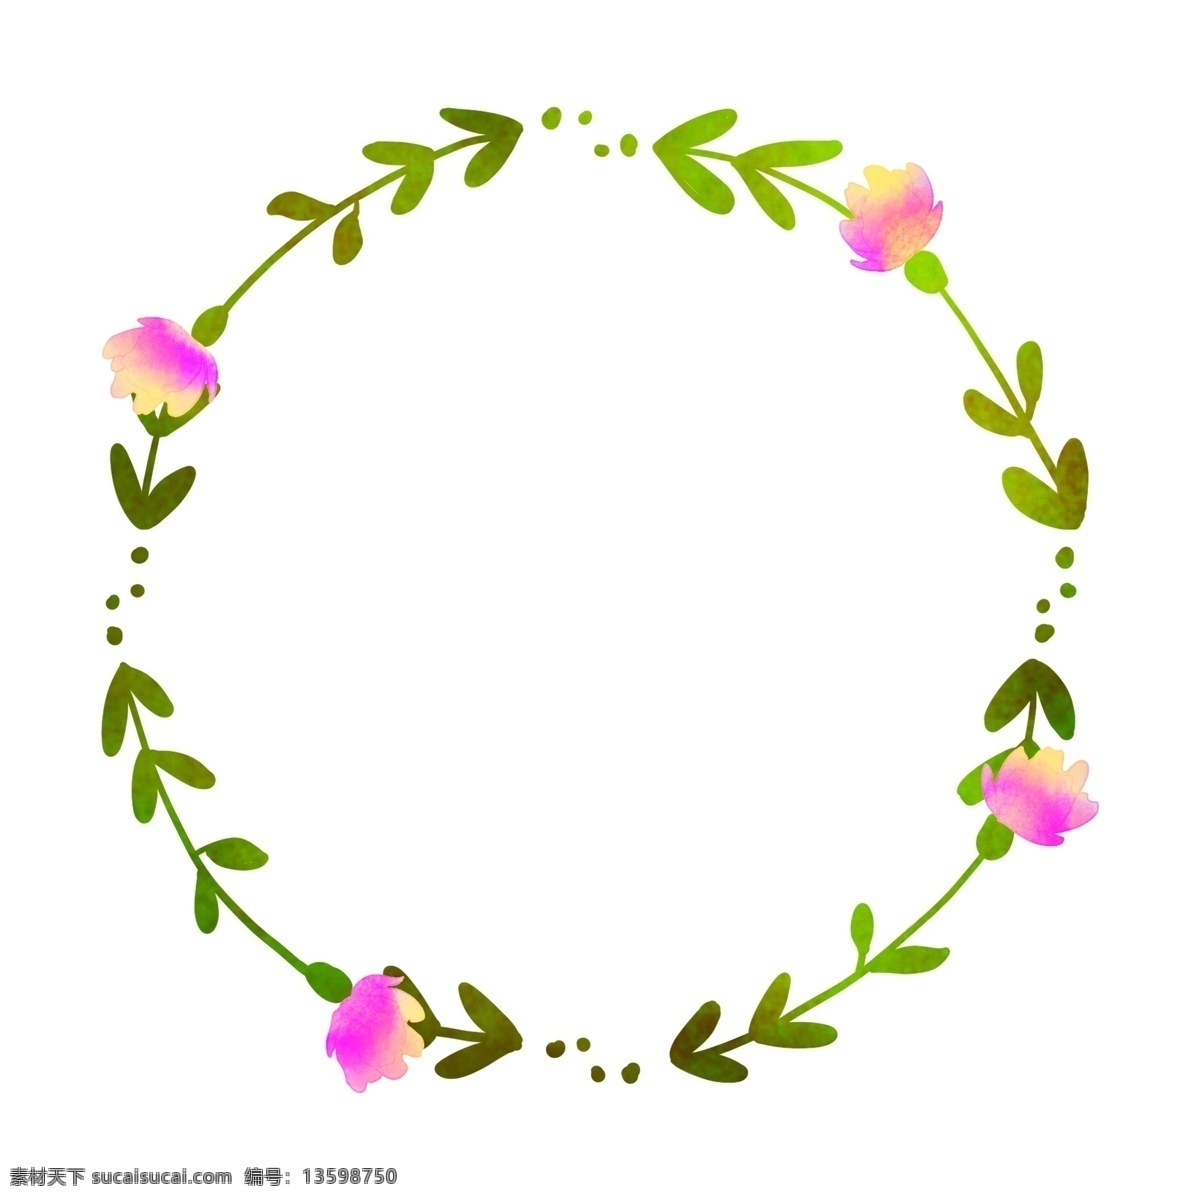 春季 植物 花环 边框 粉色花环边框 花朵装饰边框 春季植物 枝藤花环边框